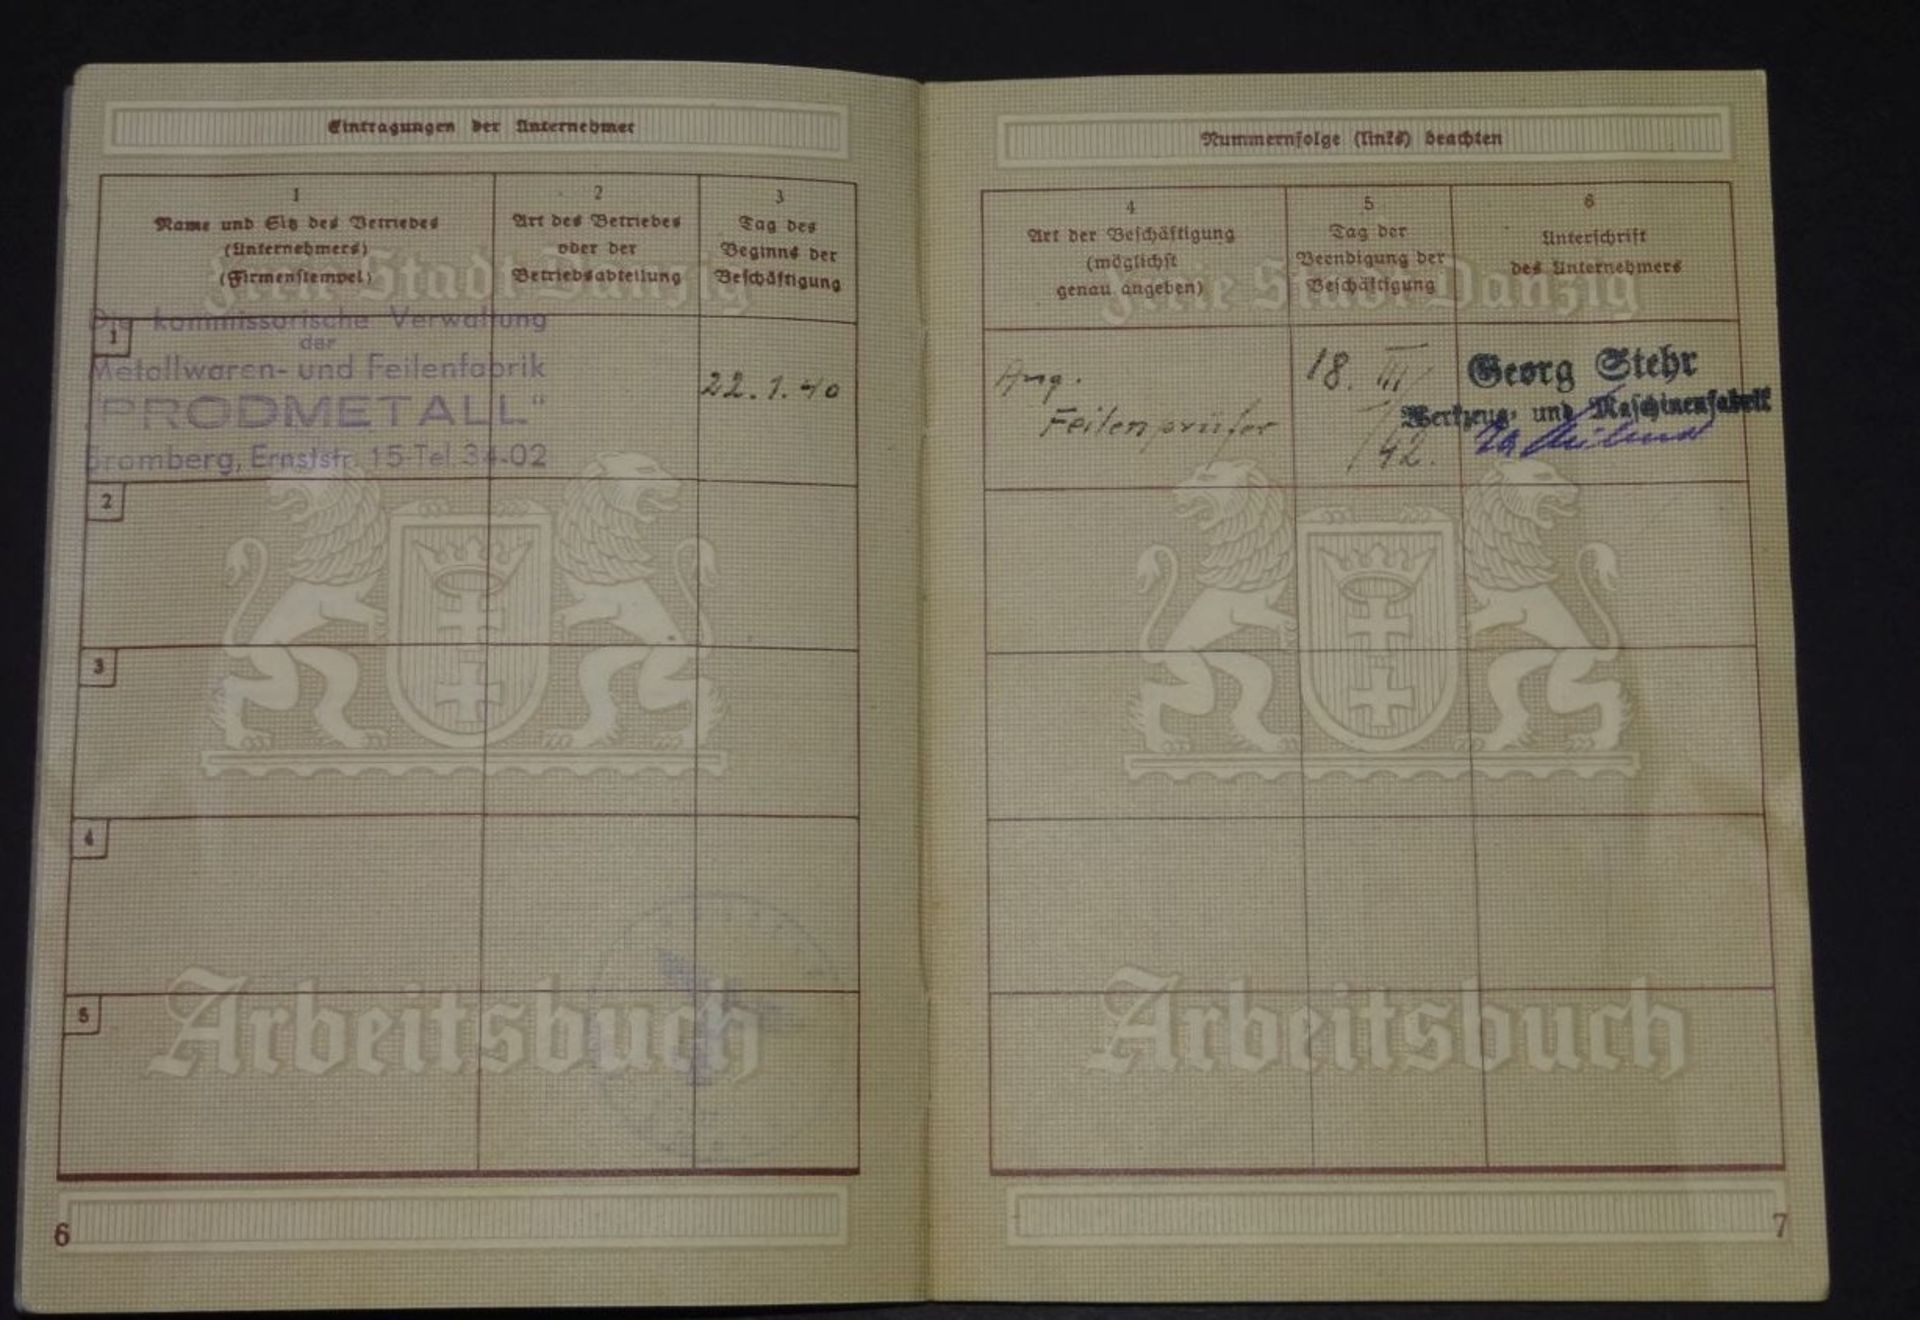 Arbeitsbuch "Freie Stadt Danzig" ab 1934- - -22.61 % buyer's premium on the hammer priceVAT margin - Bild 6 aus 6